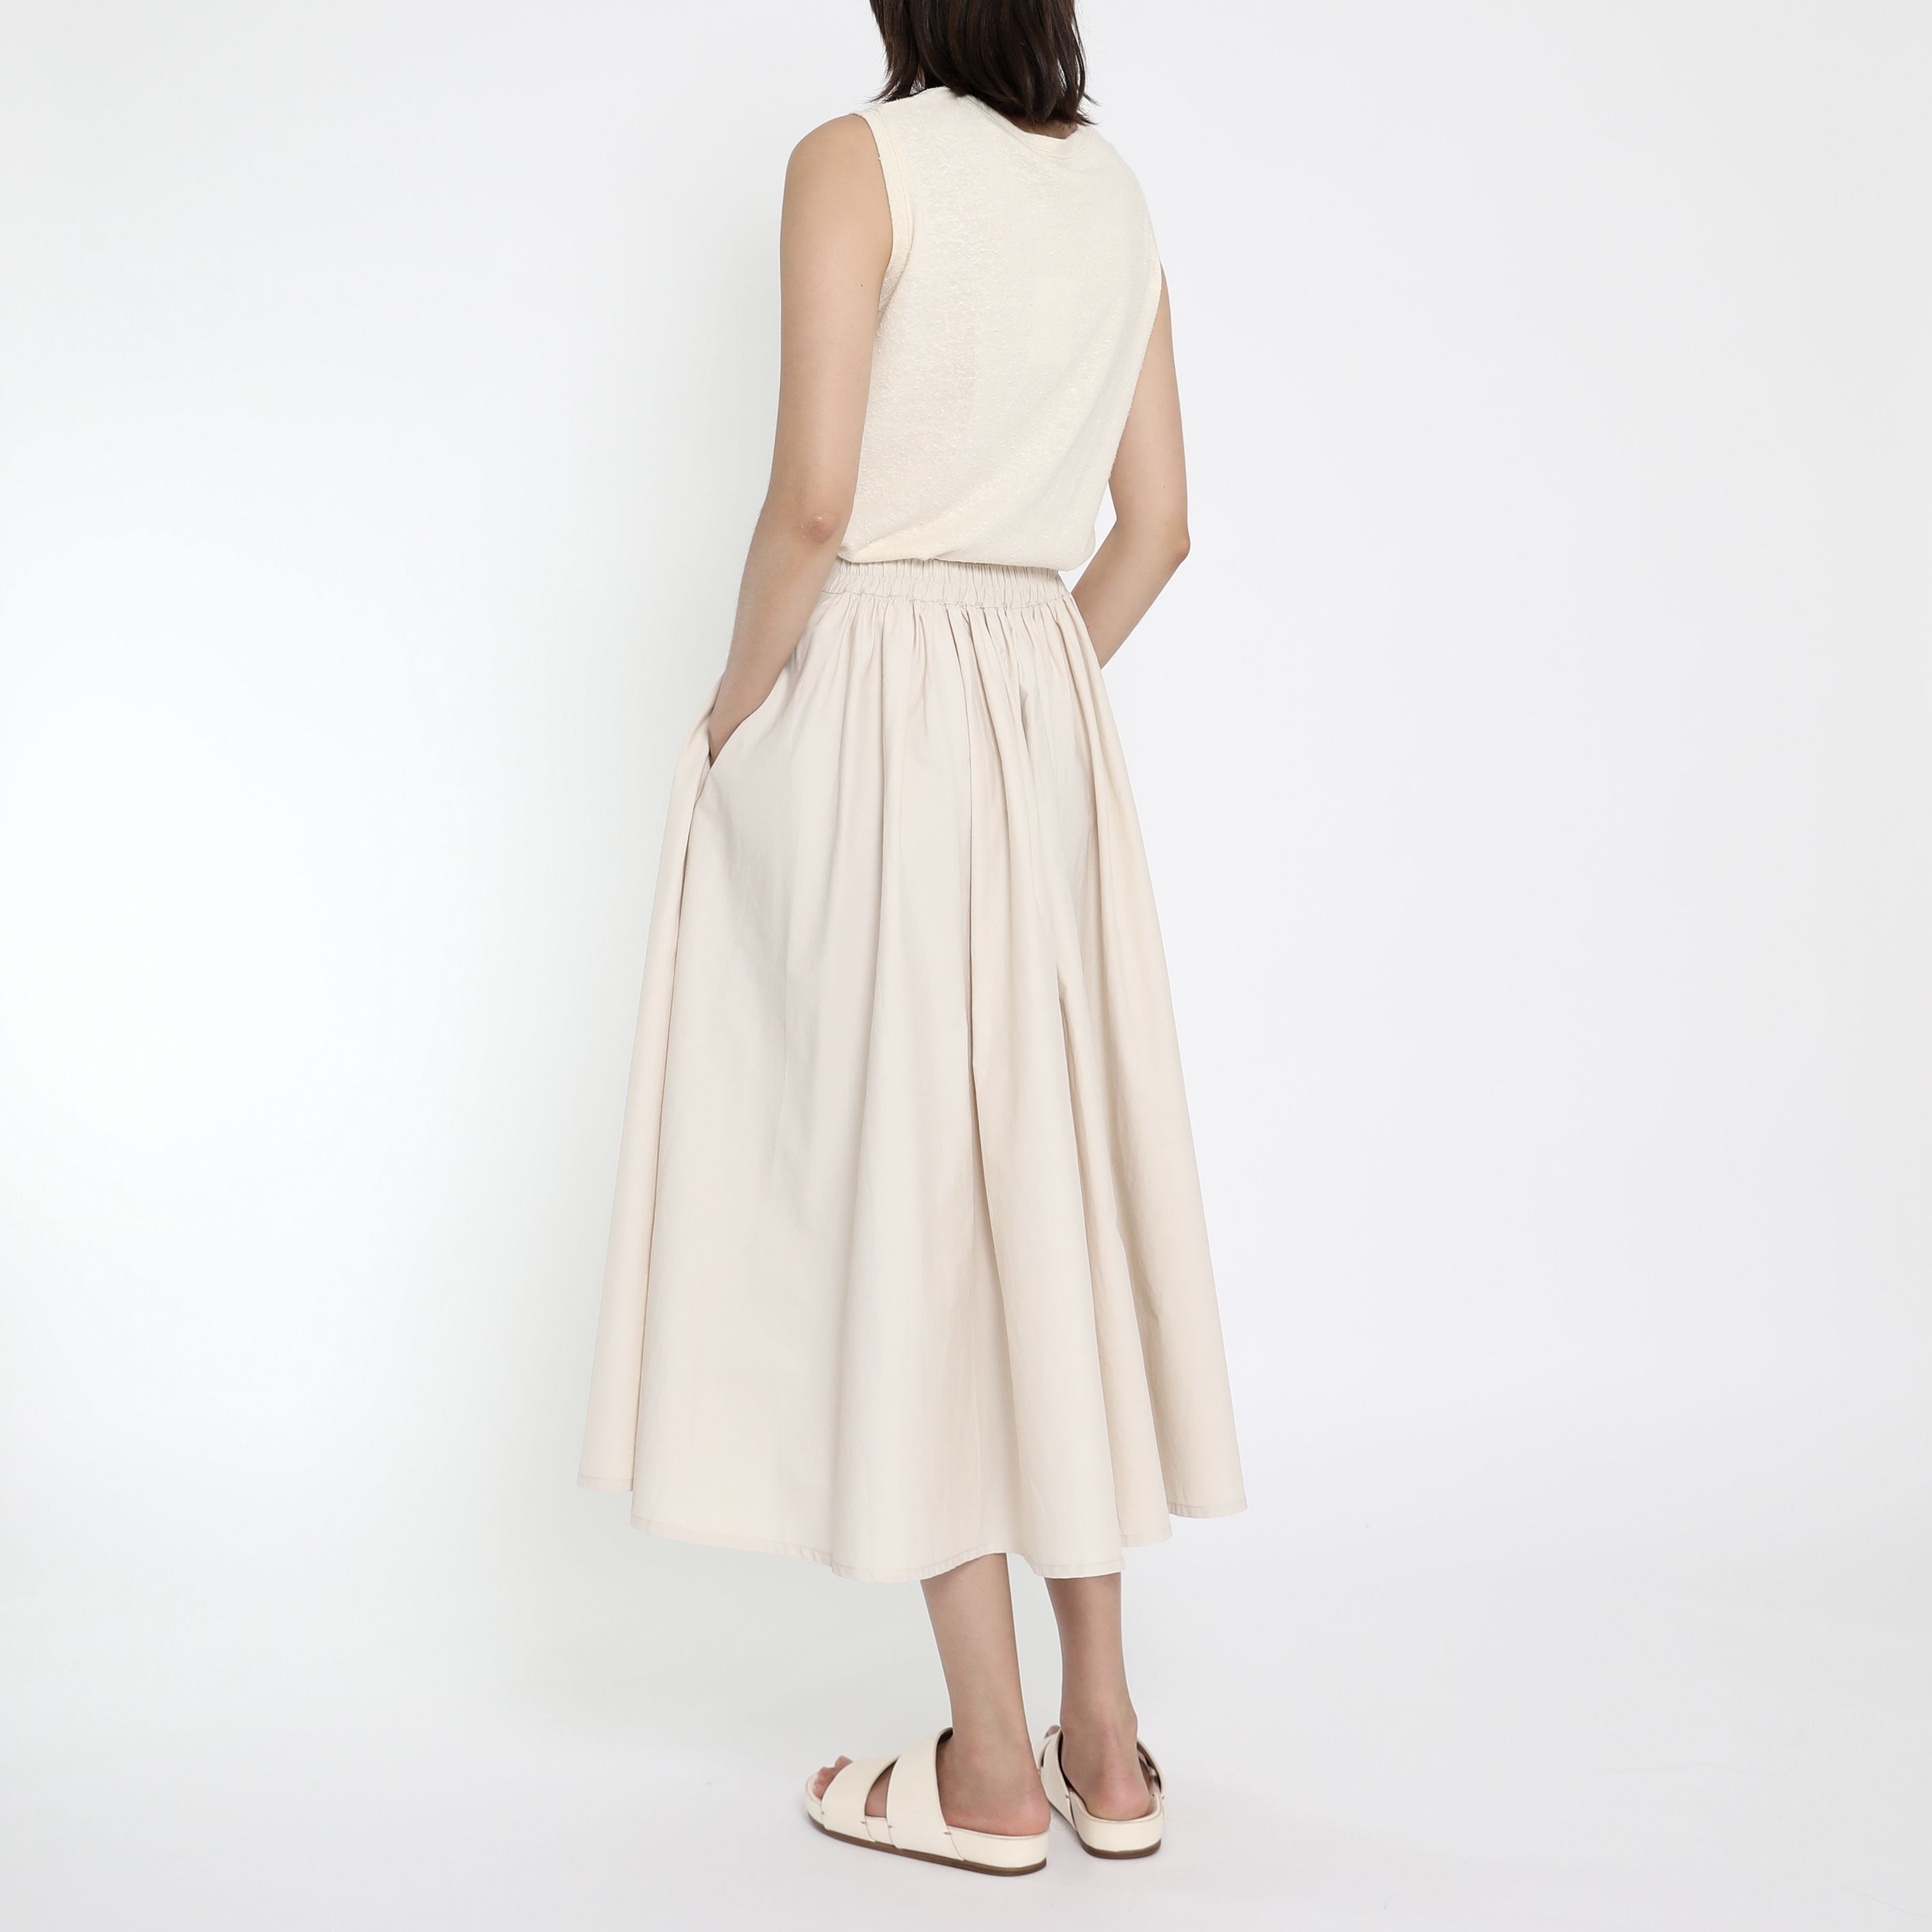 Product Image for Crisp Prairie Skirt, Bone-White